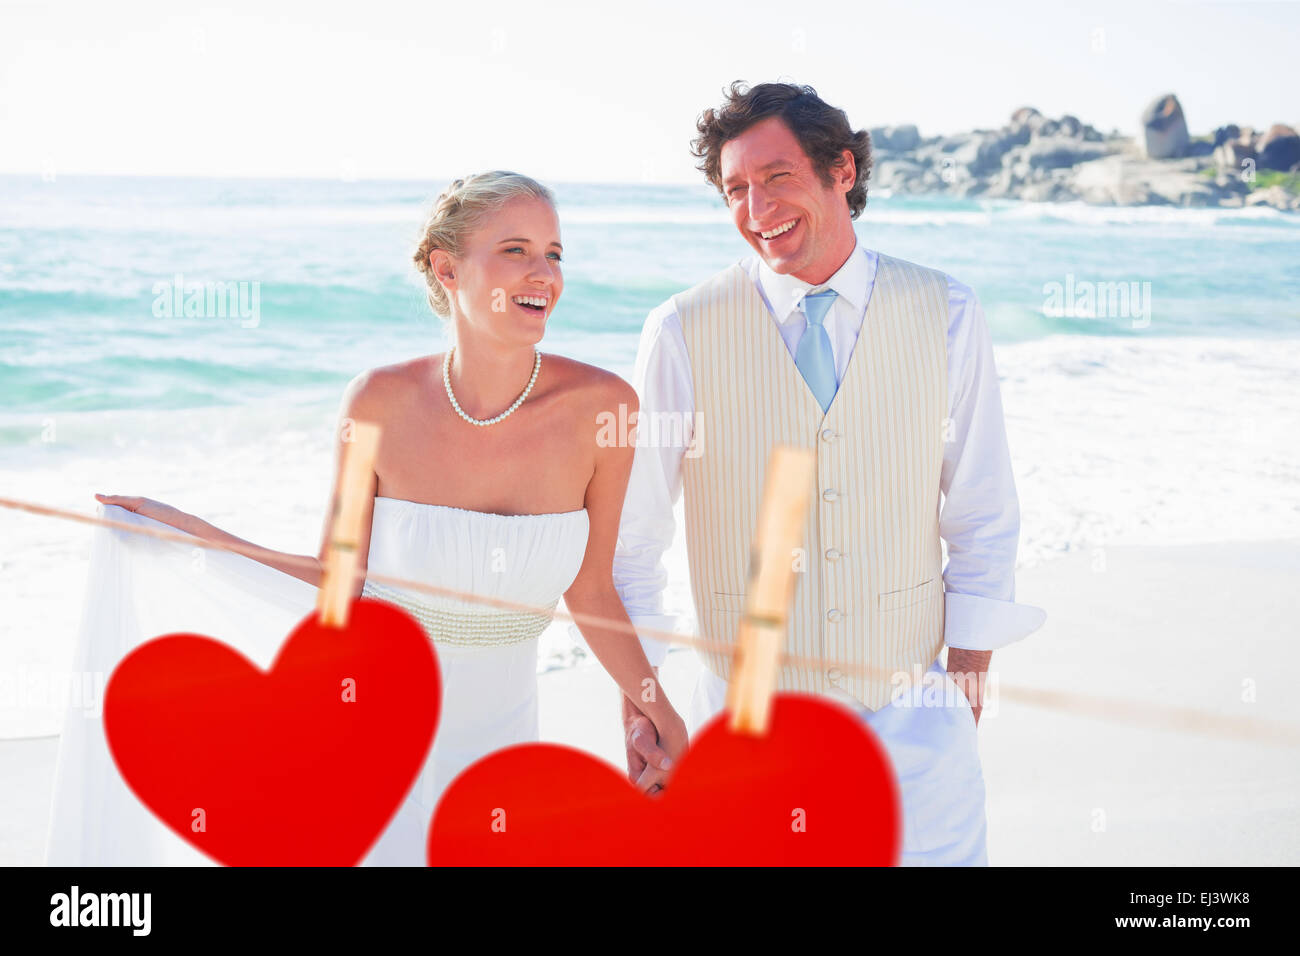 Immagine composita di sposi camminando mano nella mano e ridere Foto Stock